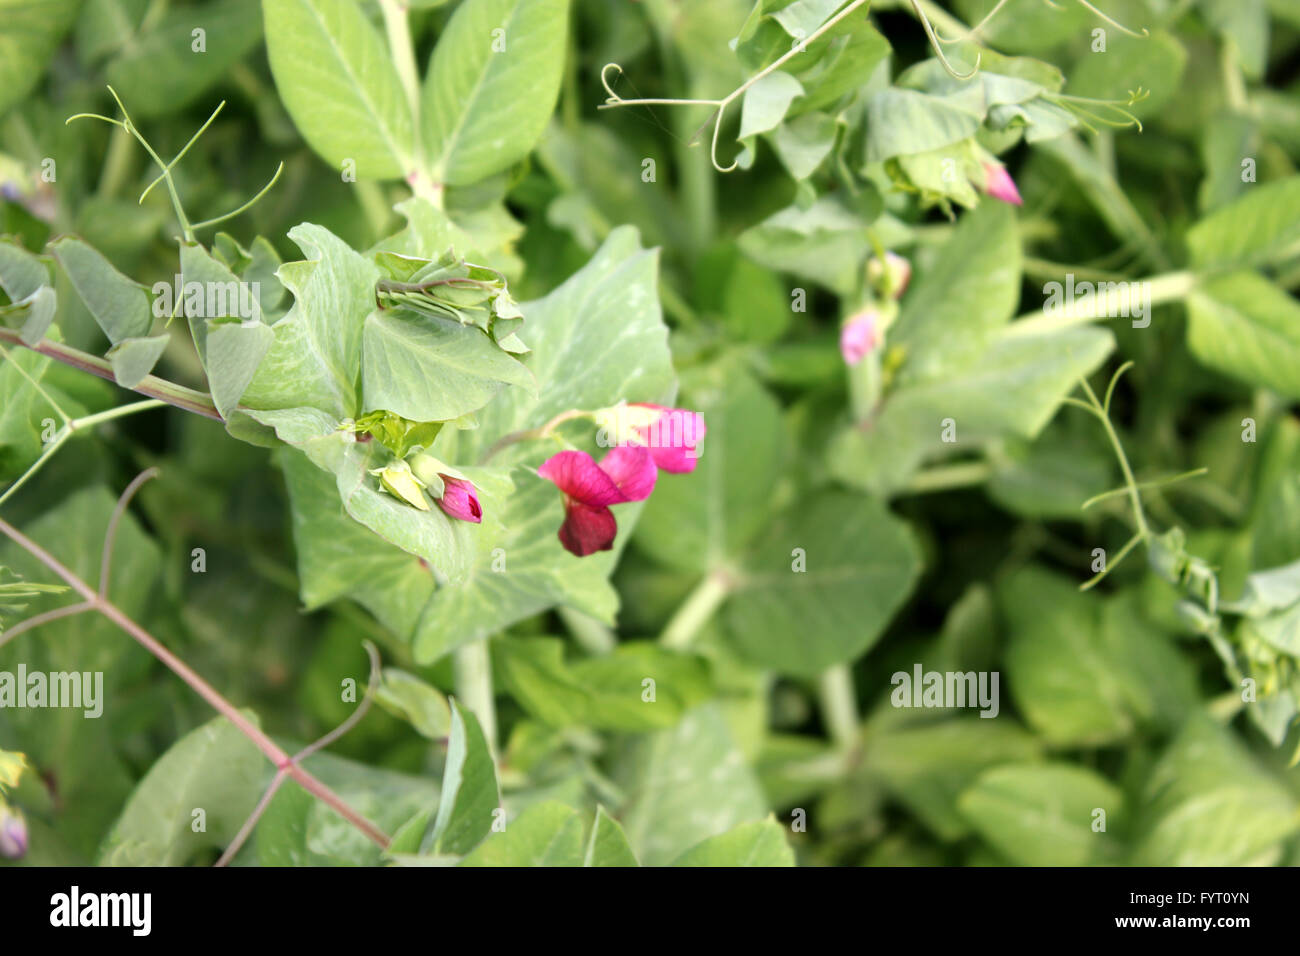 Lo zucchero pisello, Pisum sativum, famiglia Fabaceae, coltivate erbe annuali con pinnate foglie composte, terminale viticci, fiori di colore rosso Foto Stock